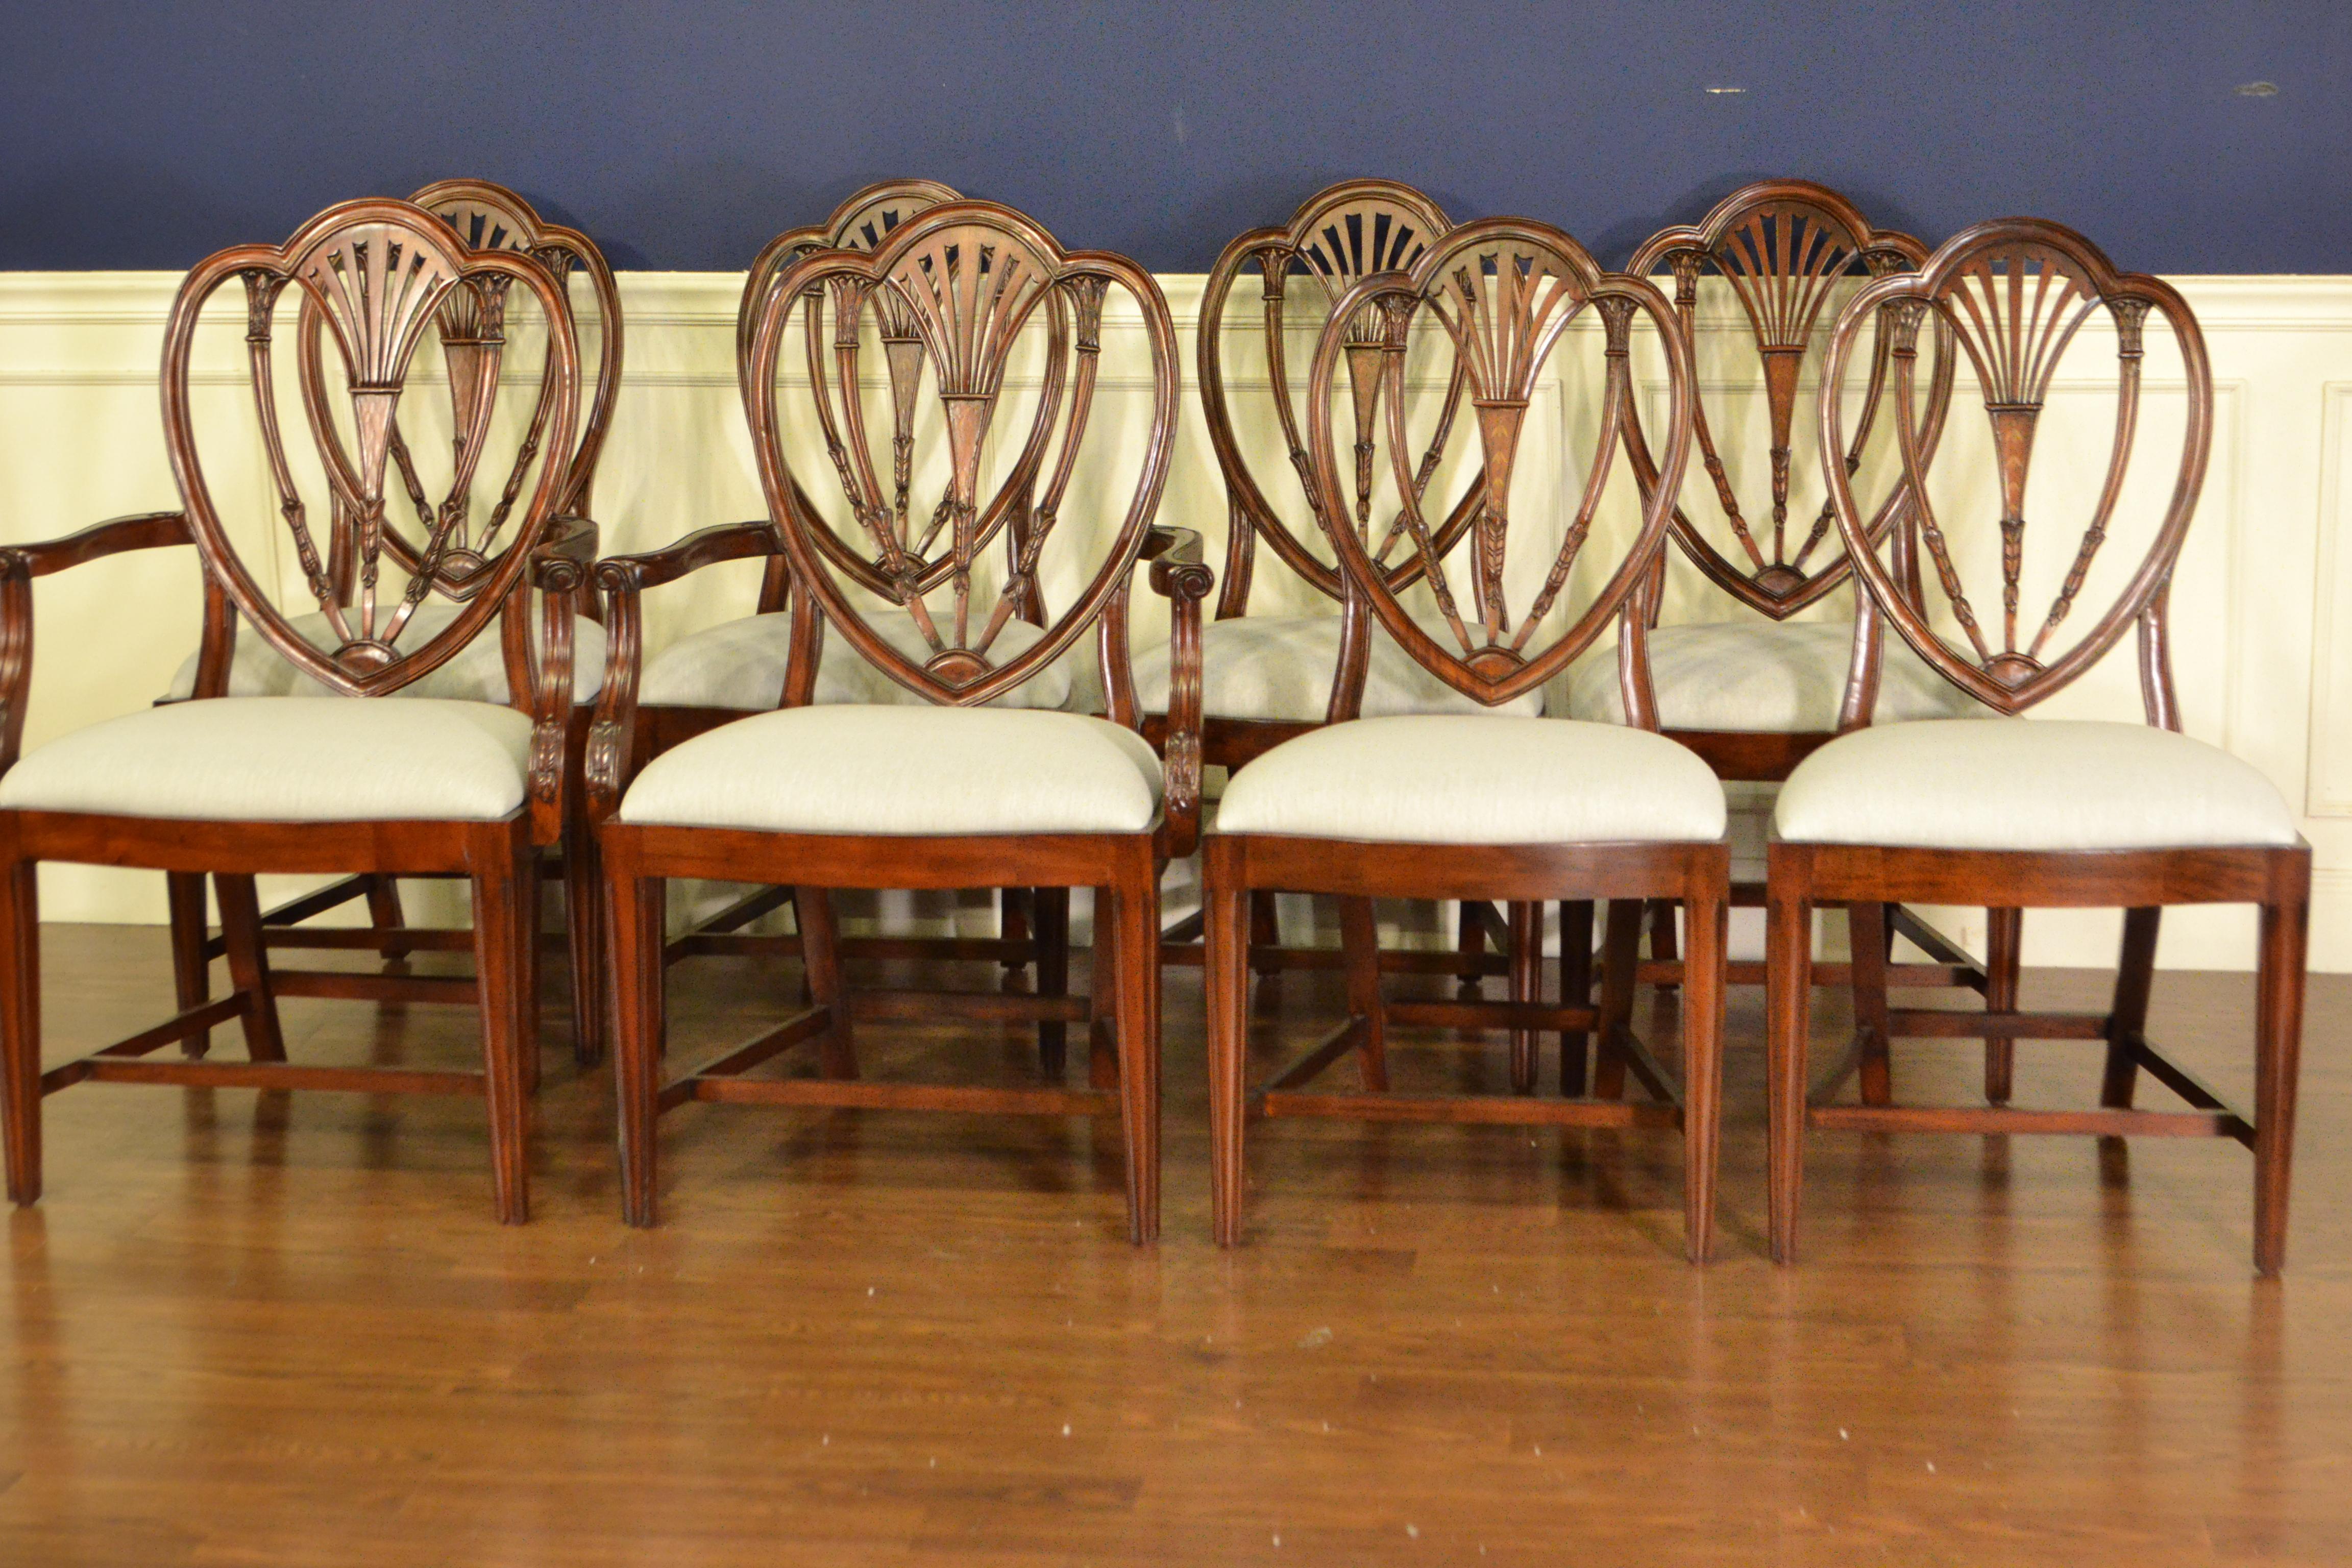 Dies sind neue traditionelle Mahagoni-Esszimmerstühle. Ihr Design wurde von den Hepplewhite Dining Stühlen aus der Regentschaftszeit inspiriert. Sie zeichnen sich durch das klassische Hepplewhite-Design mit geschützter Rückenlehne und konisch